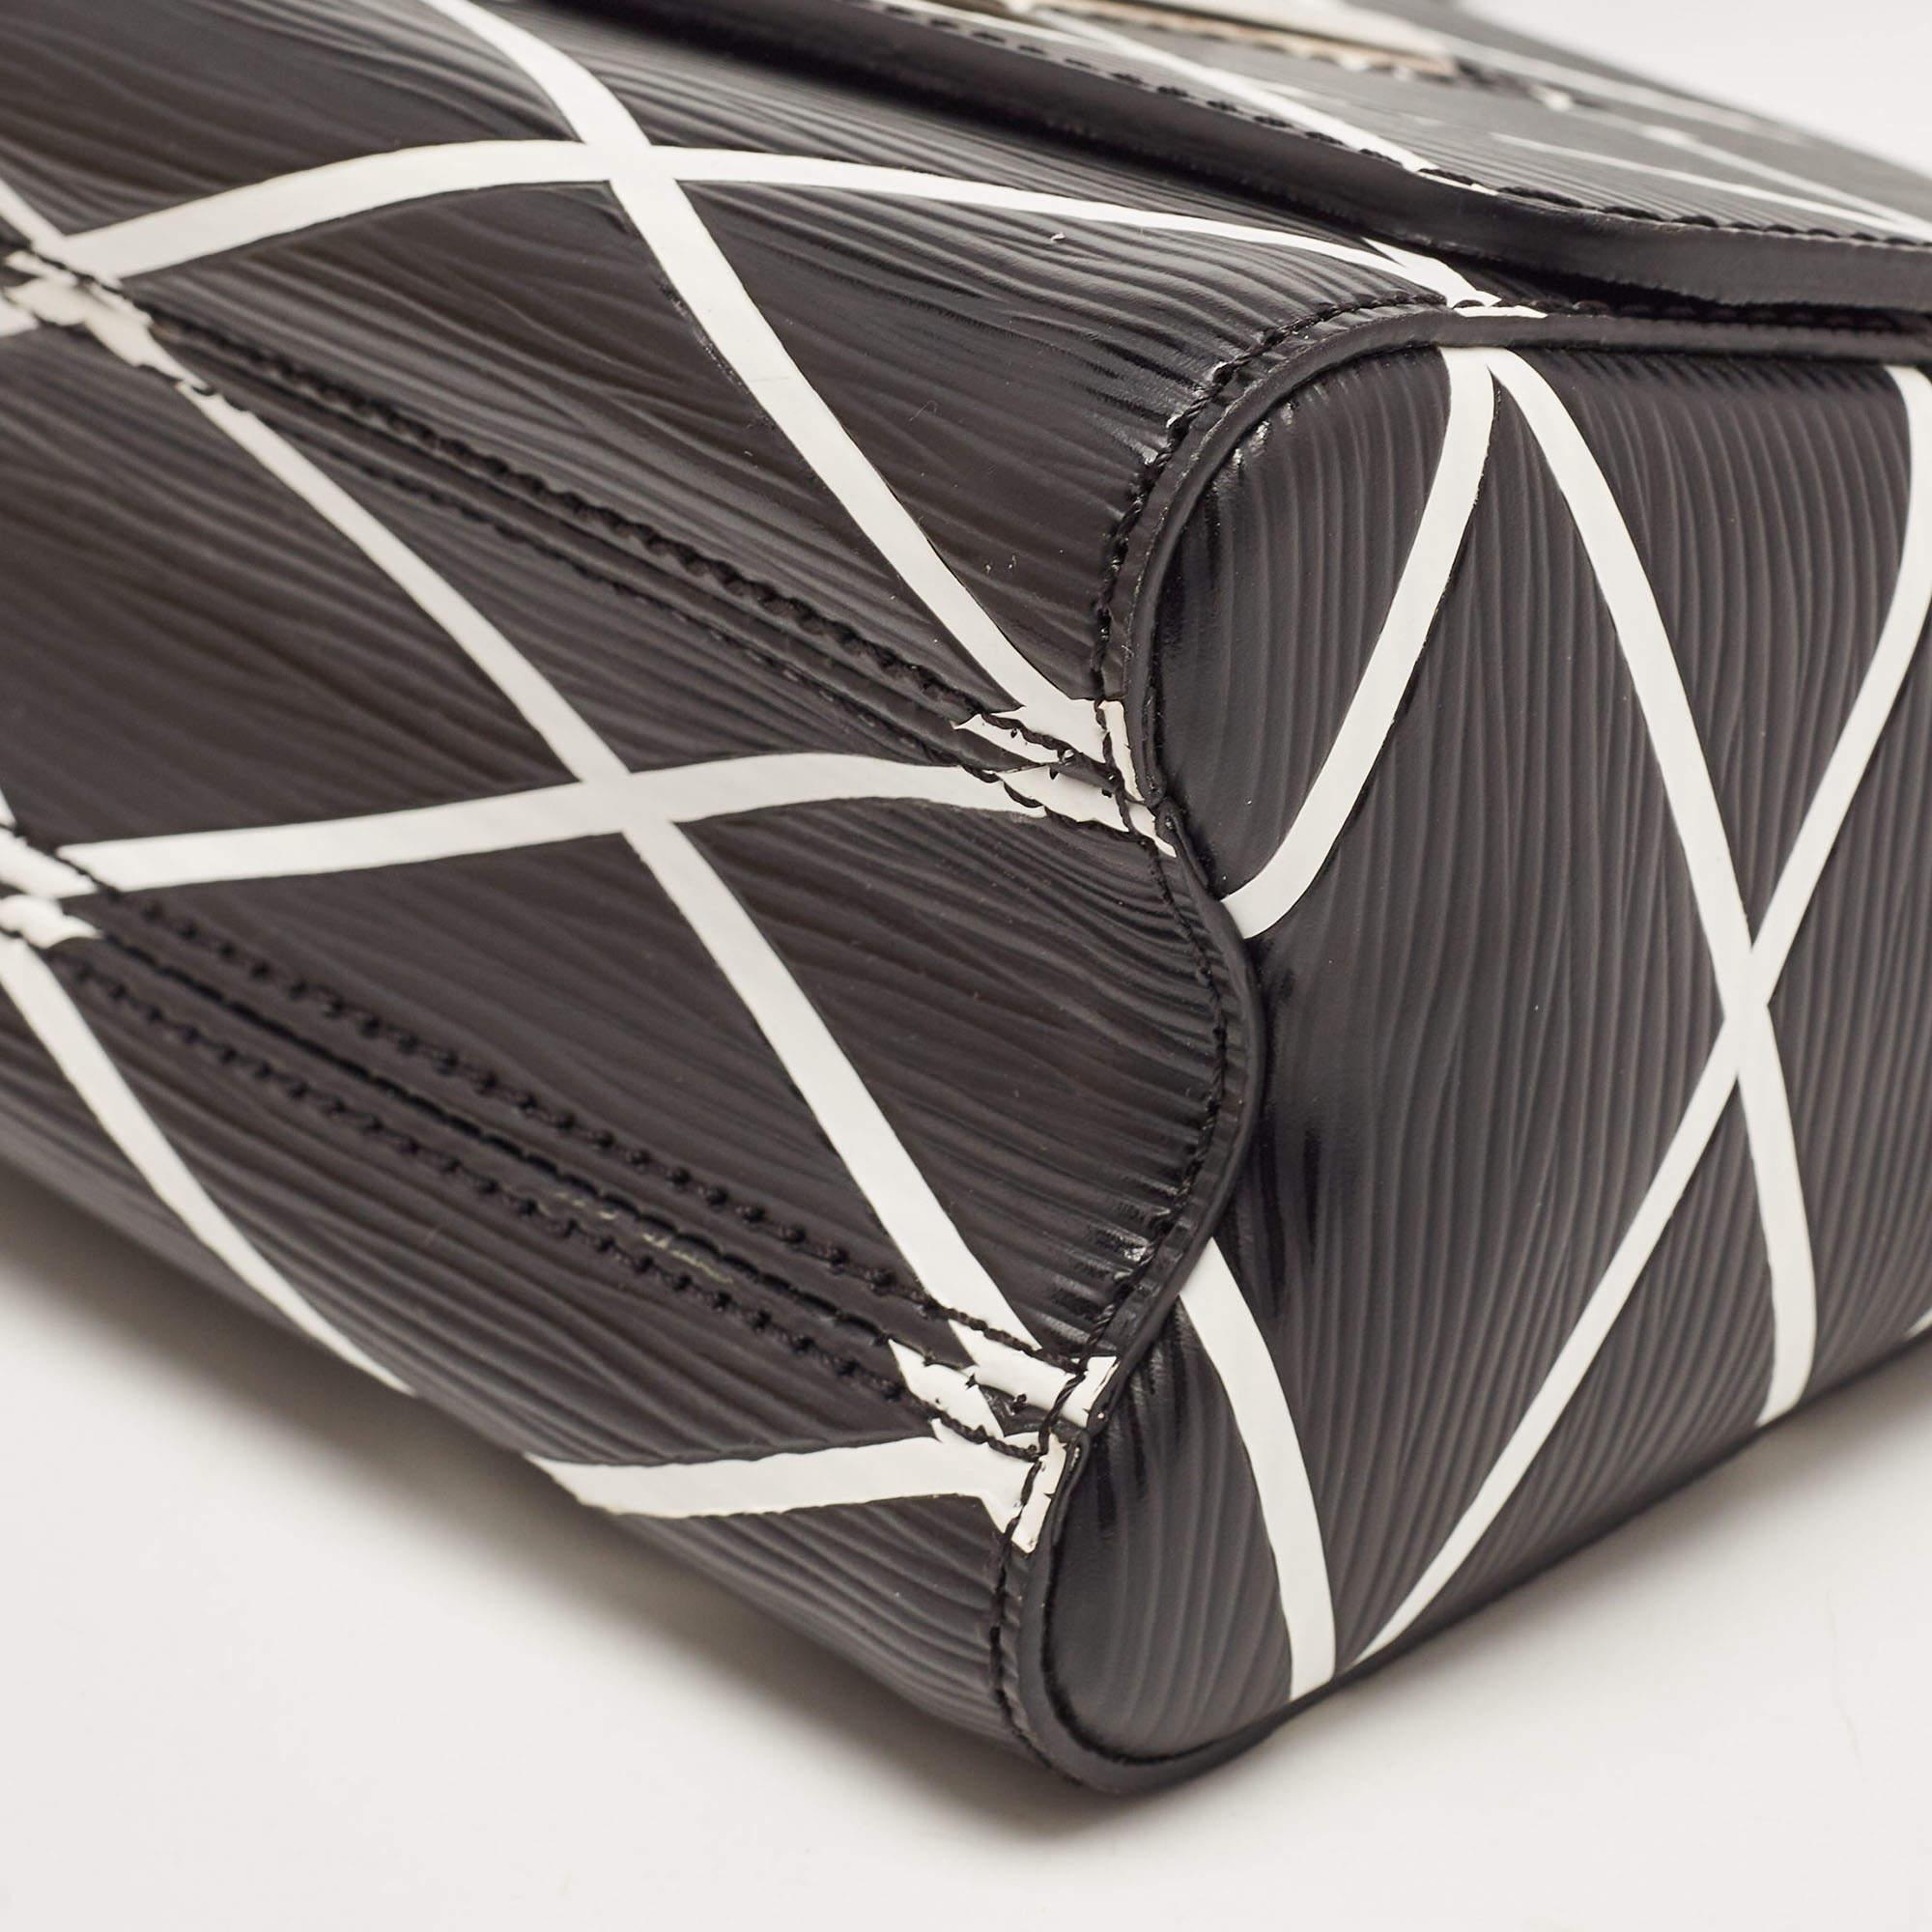 Louis Vuitton Black/White Malletage Epi Leather Twist PM Bag 4